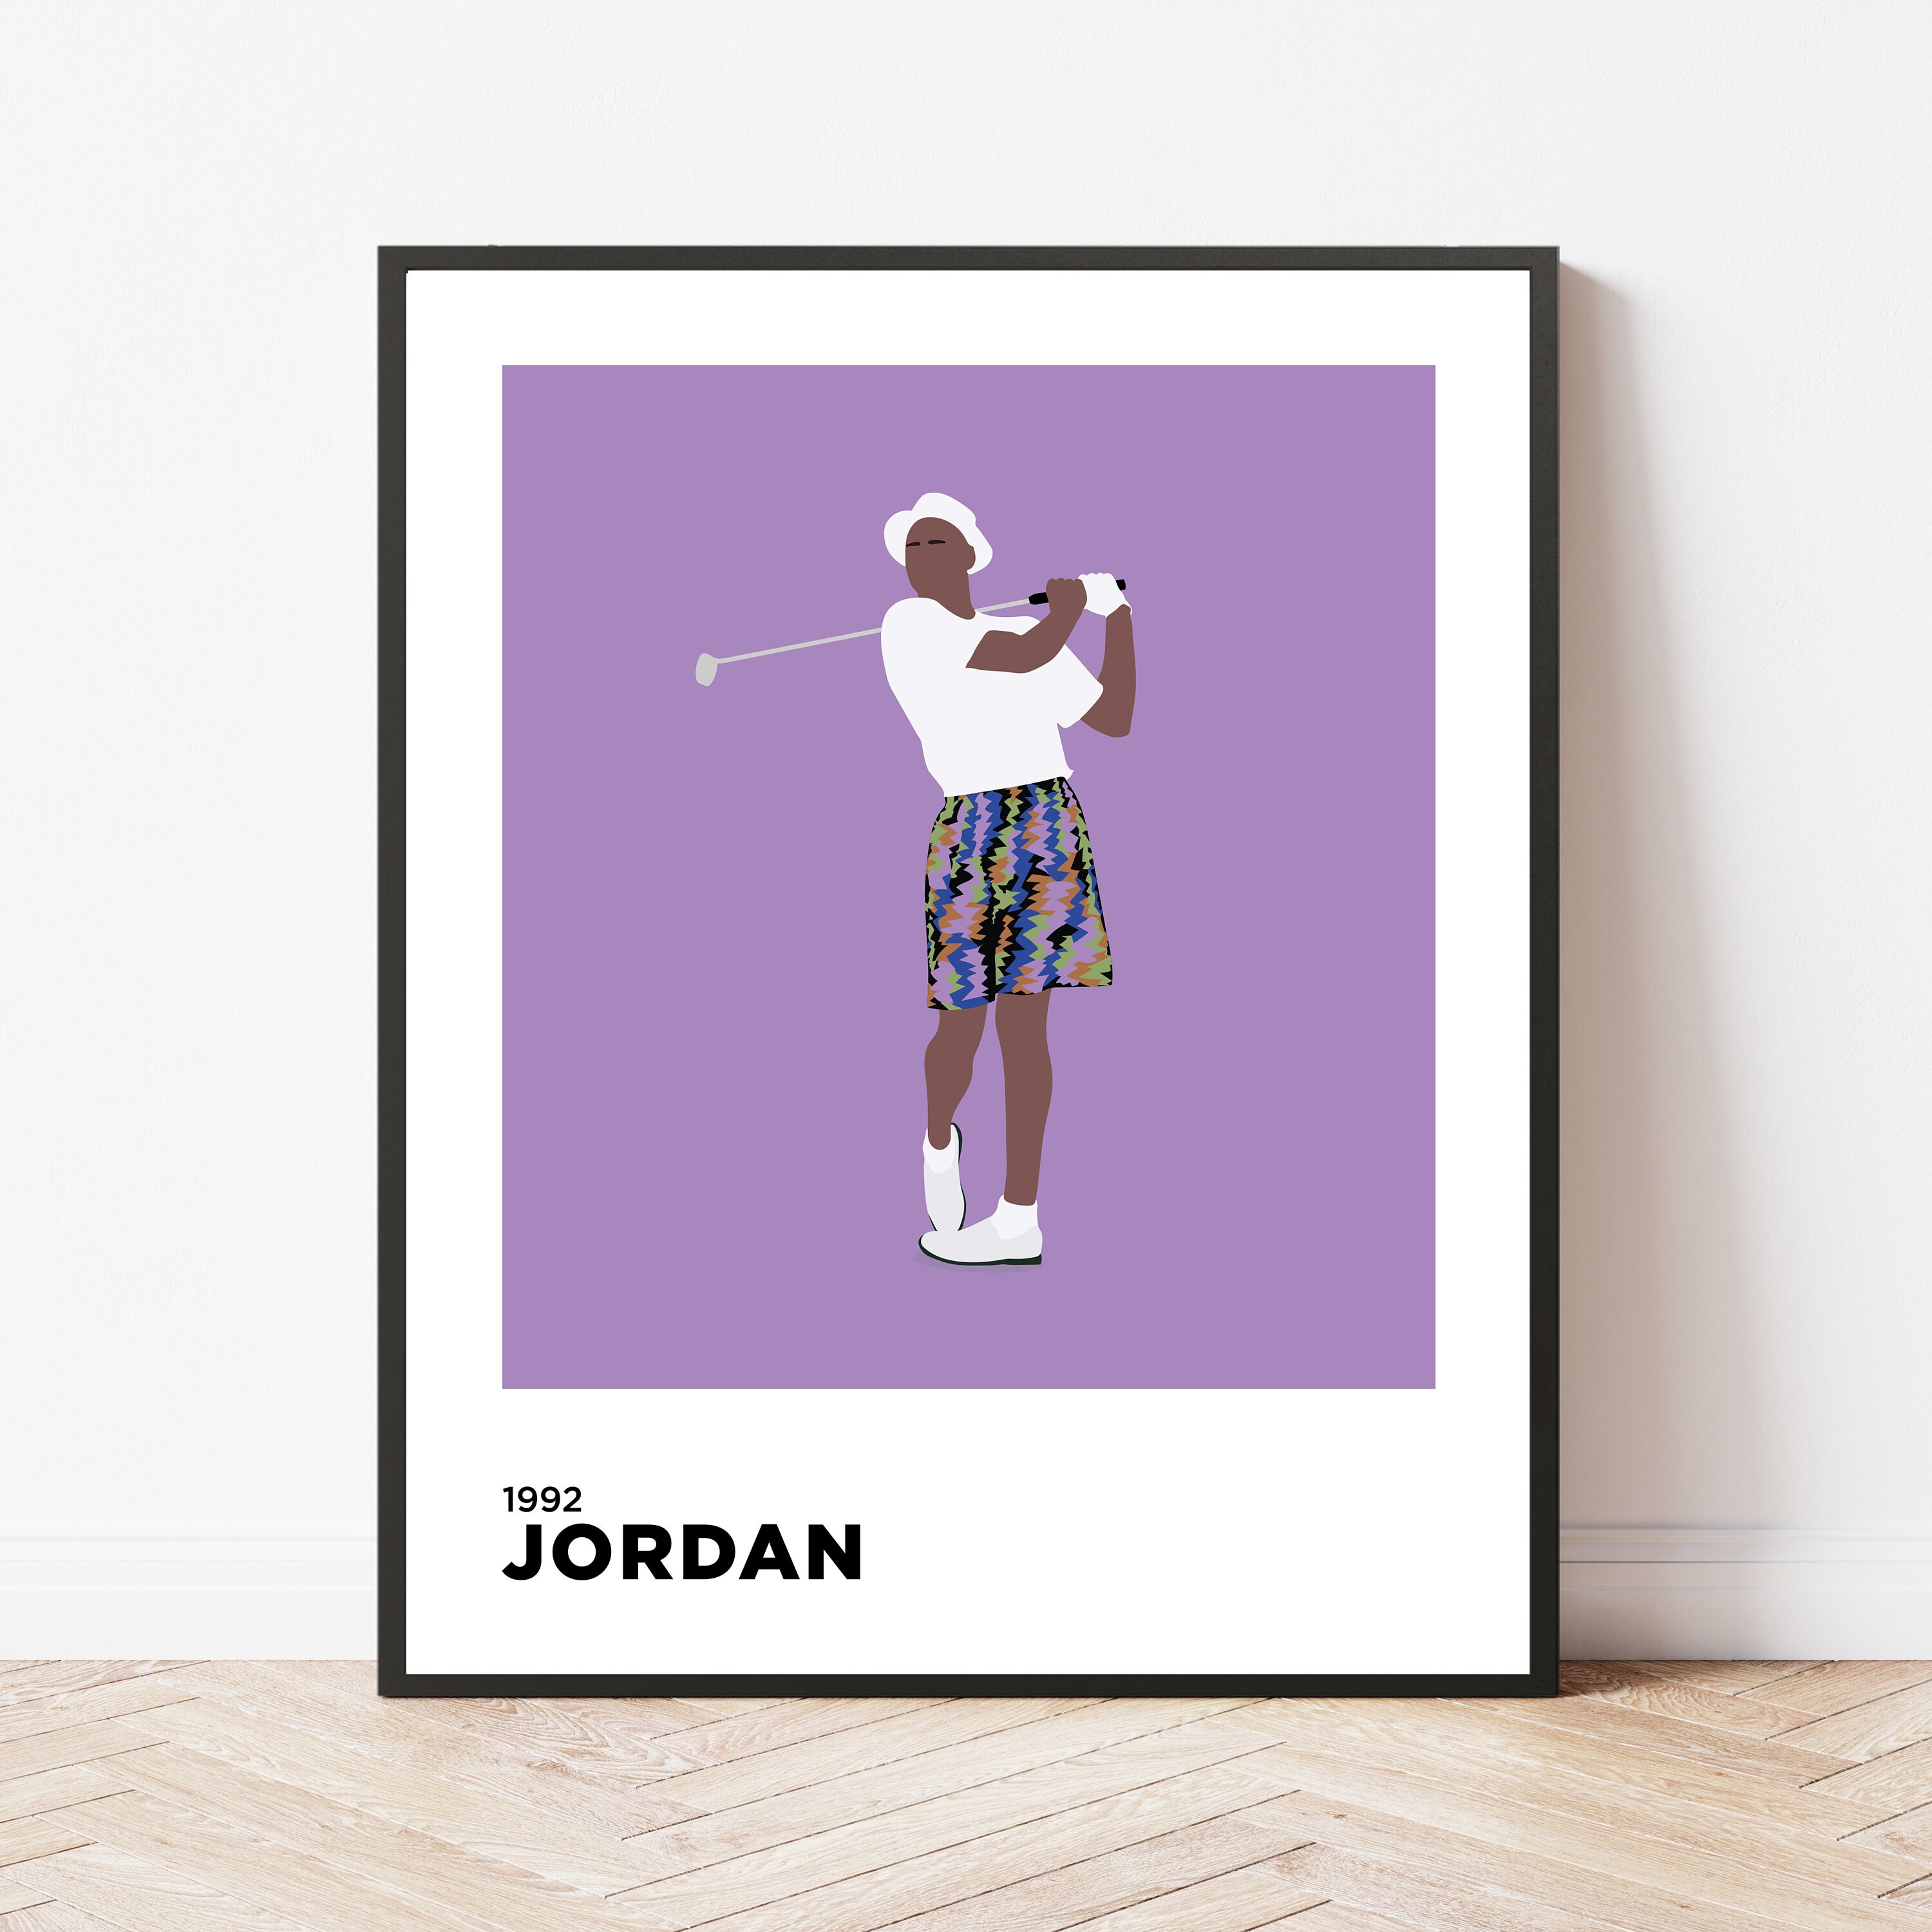 Michael Jordan Golf Fan Apparel and Souvenirs for sale